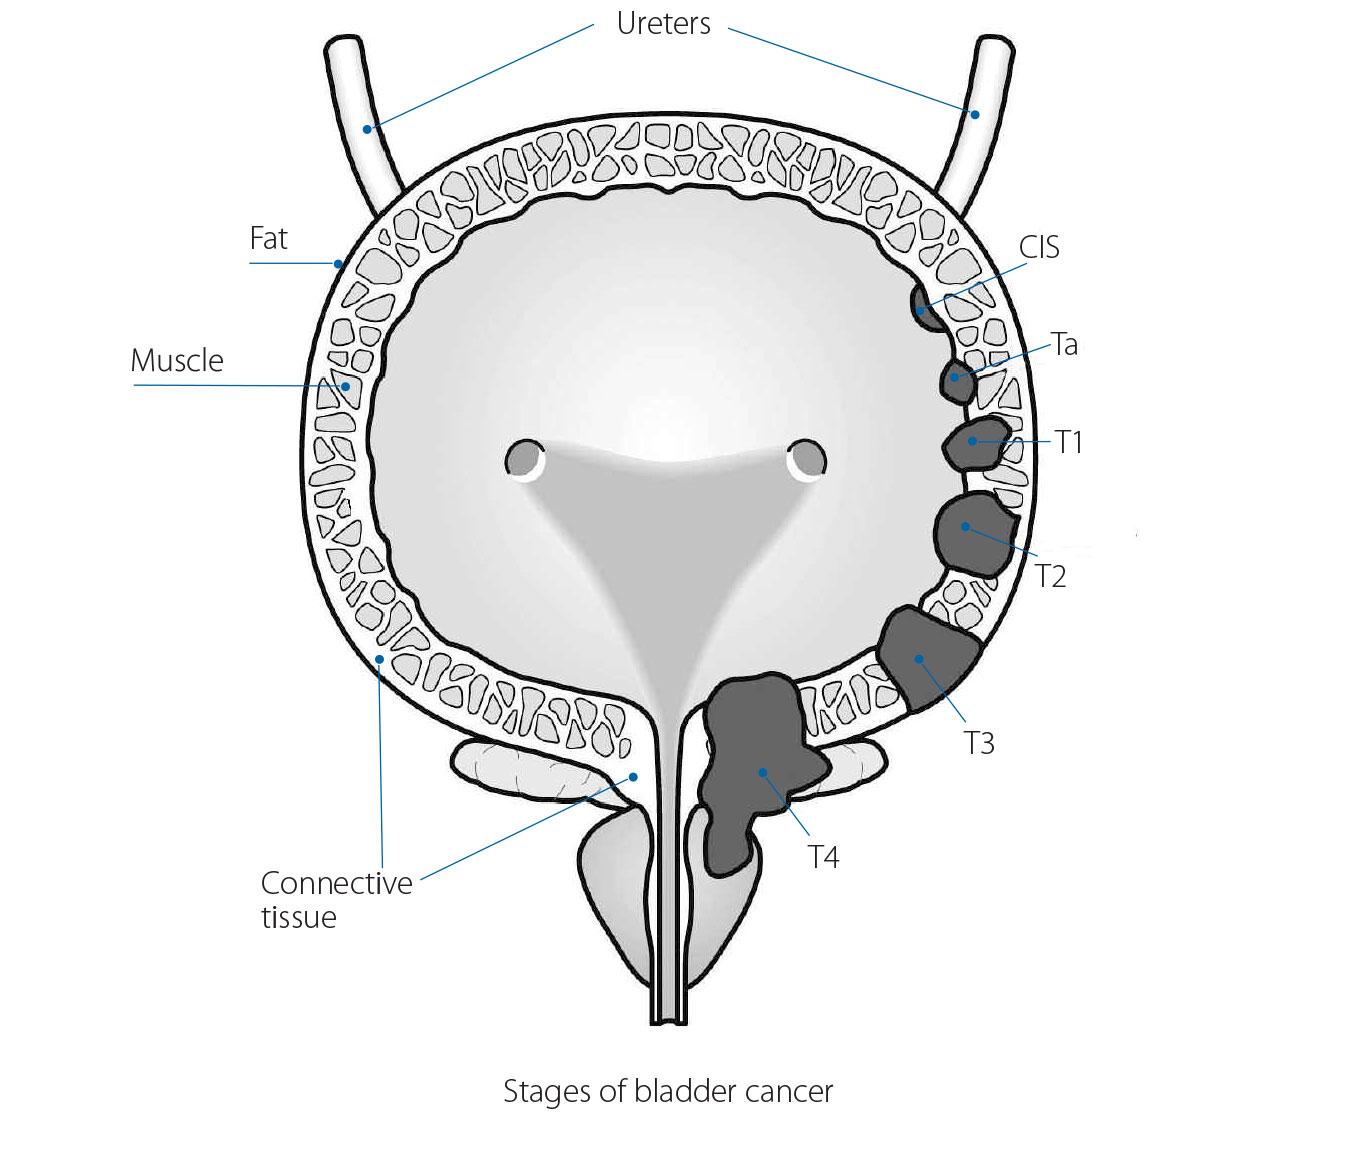 Stages of bladdr cancer